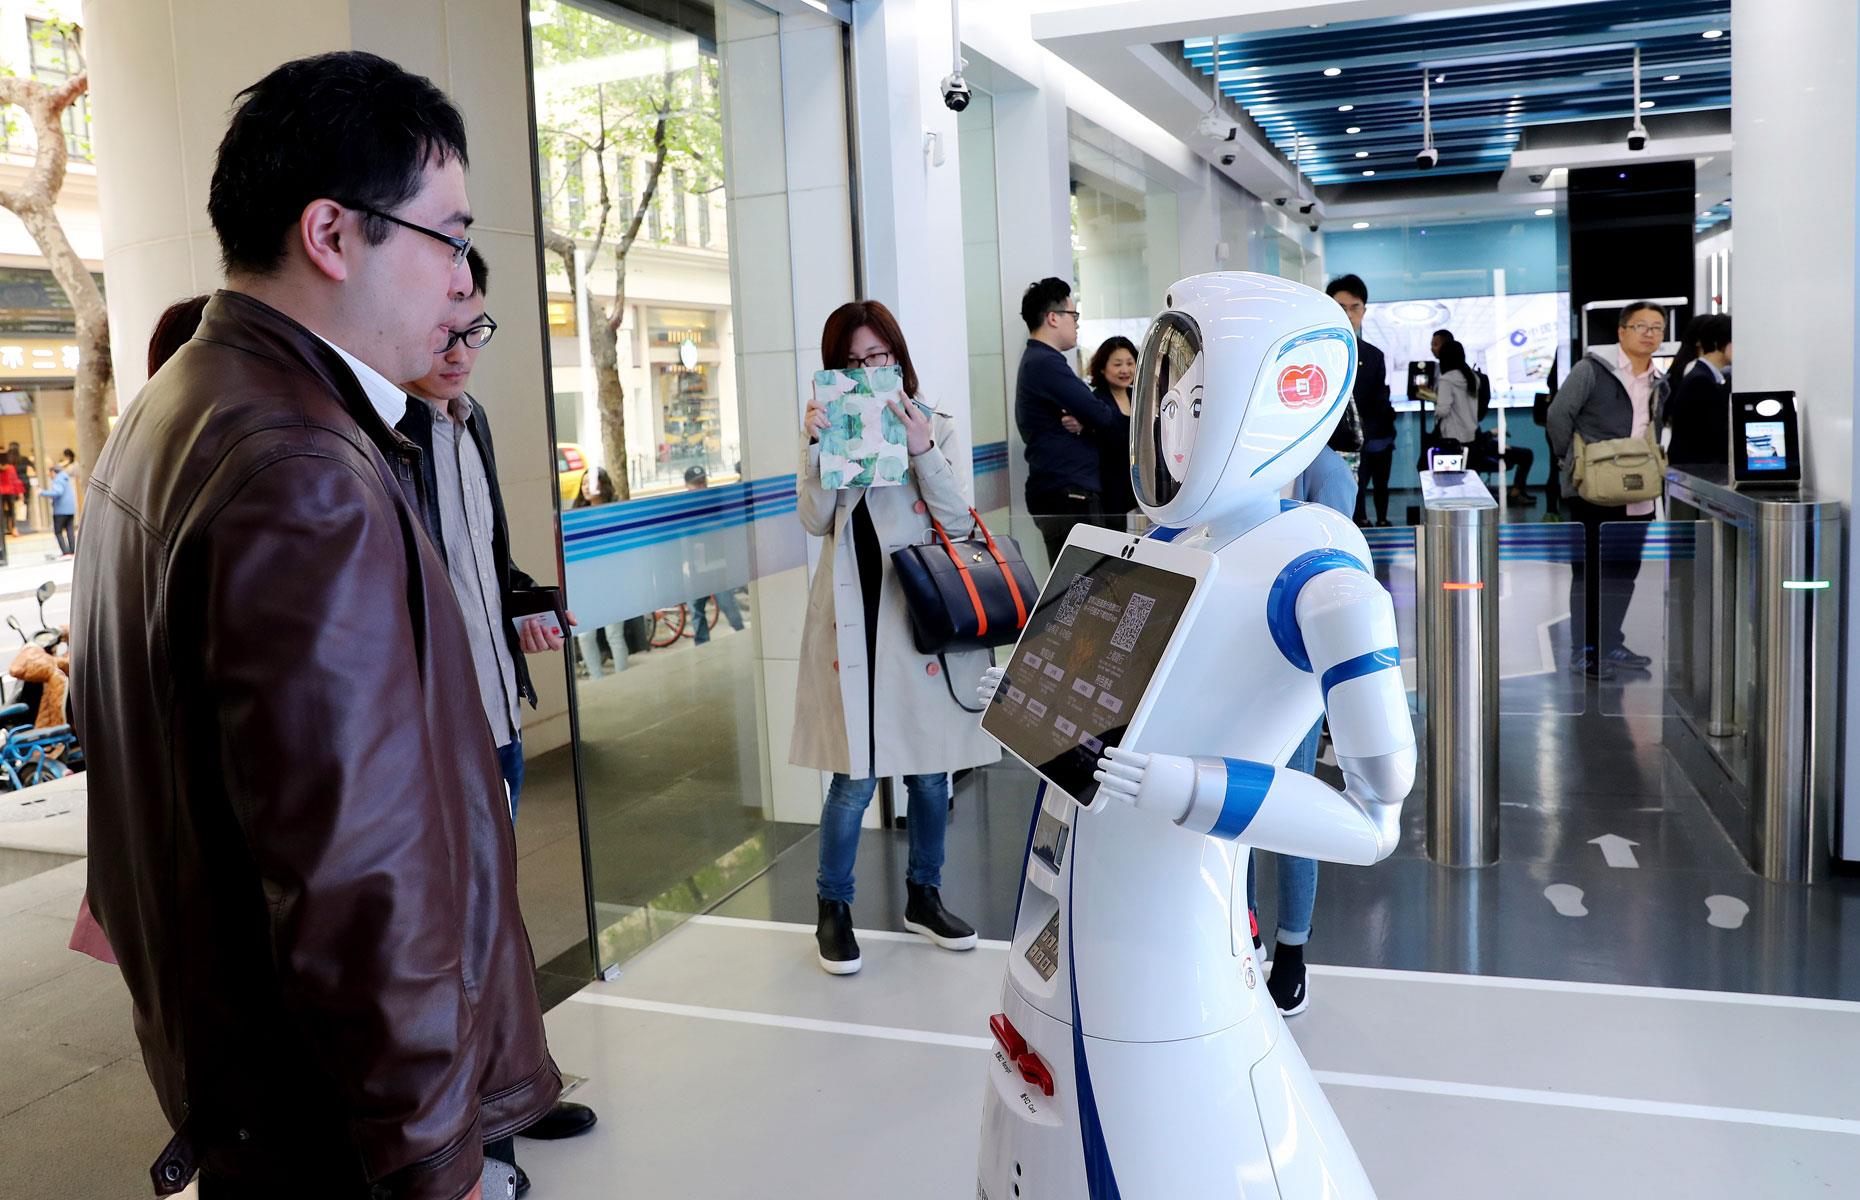 World's first robot-staffed bank